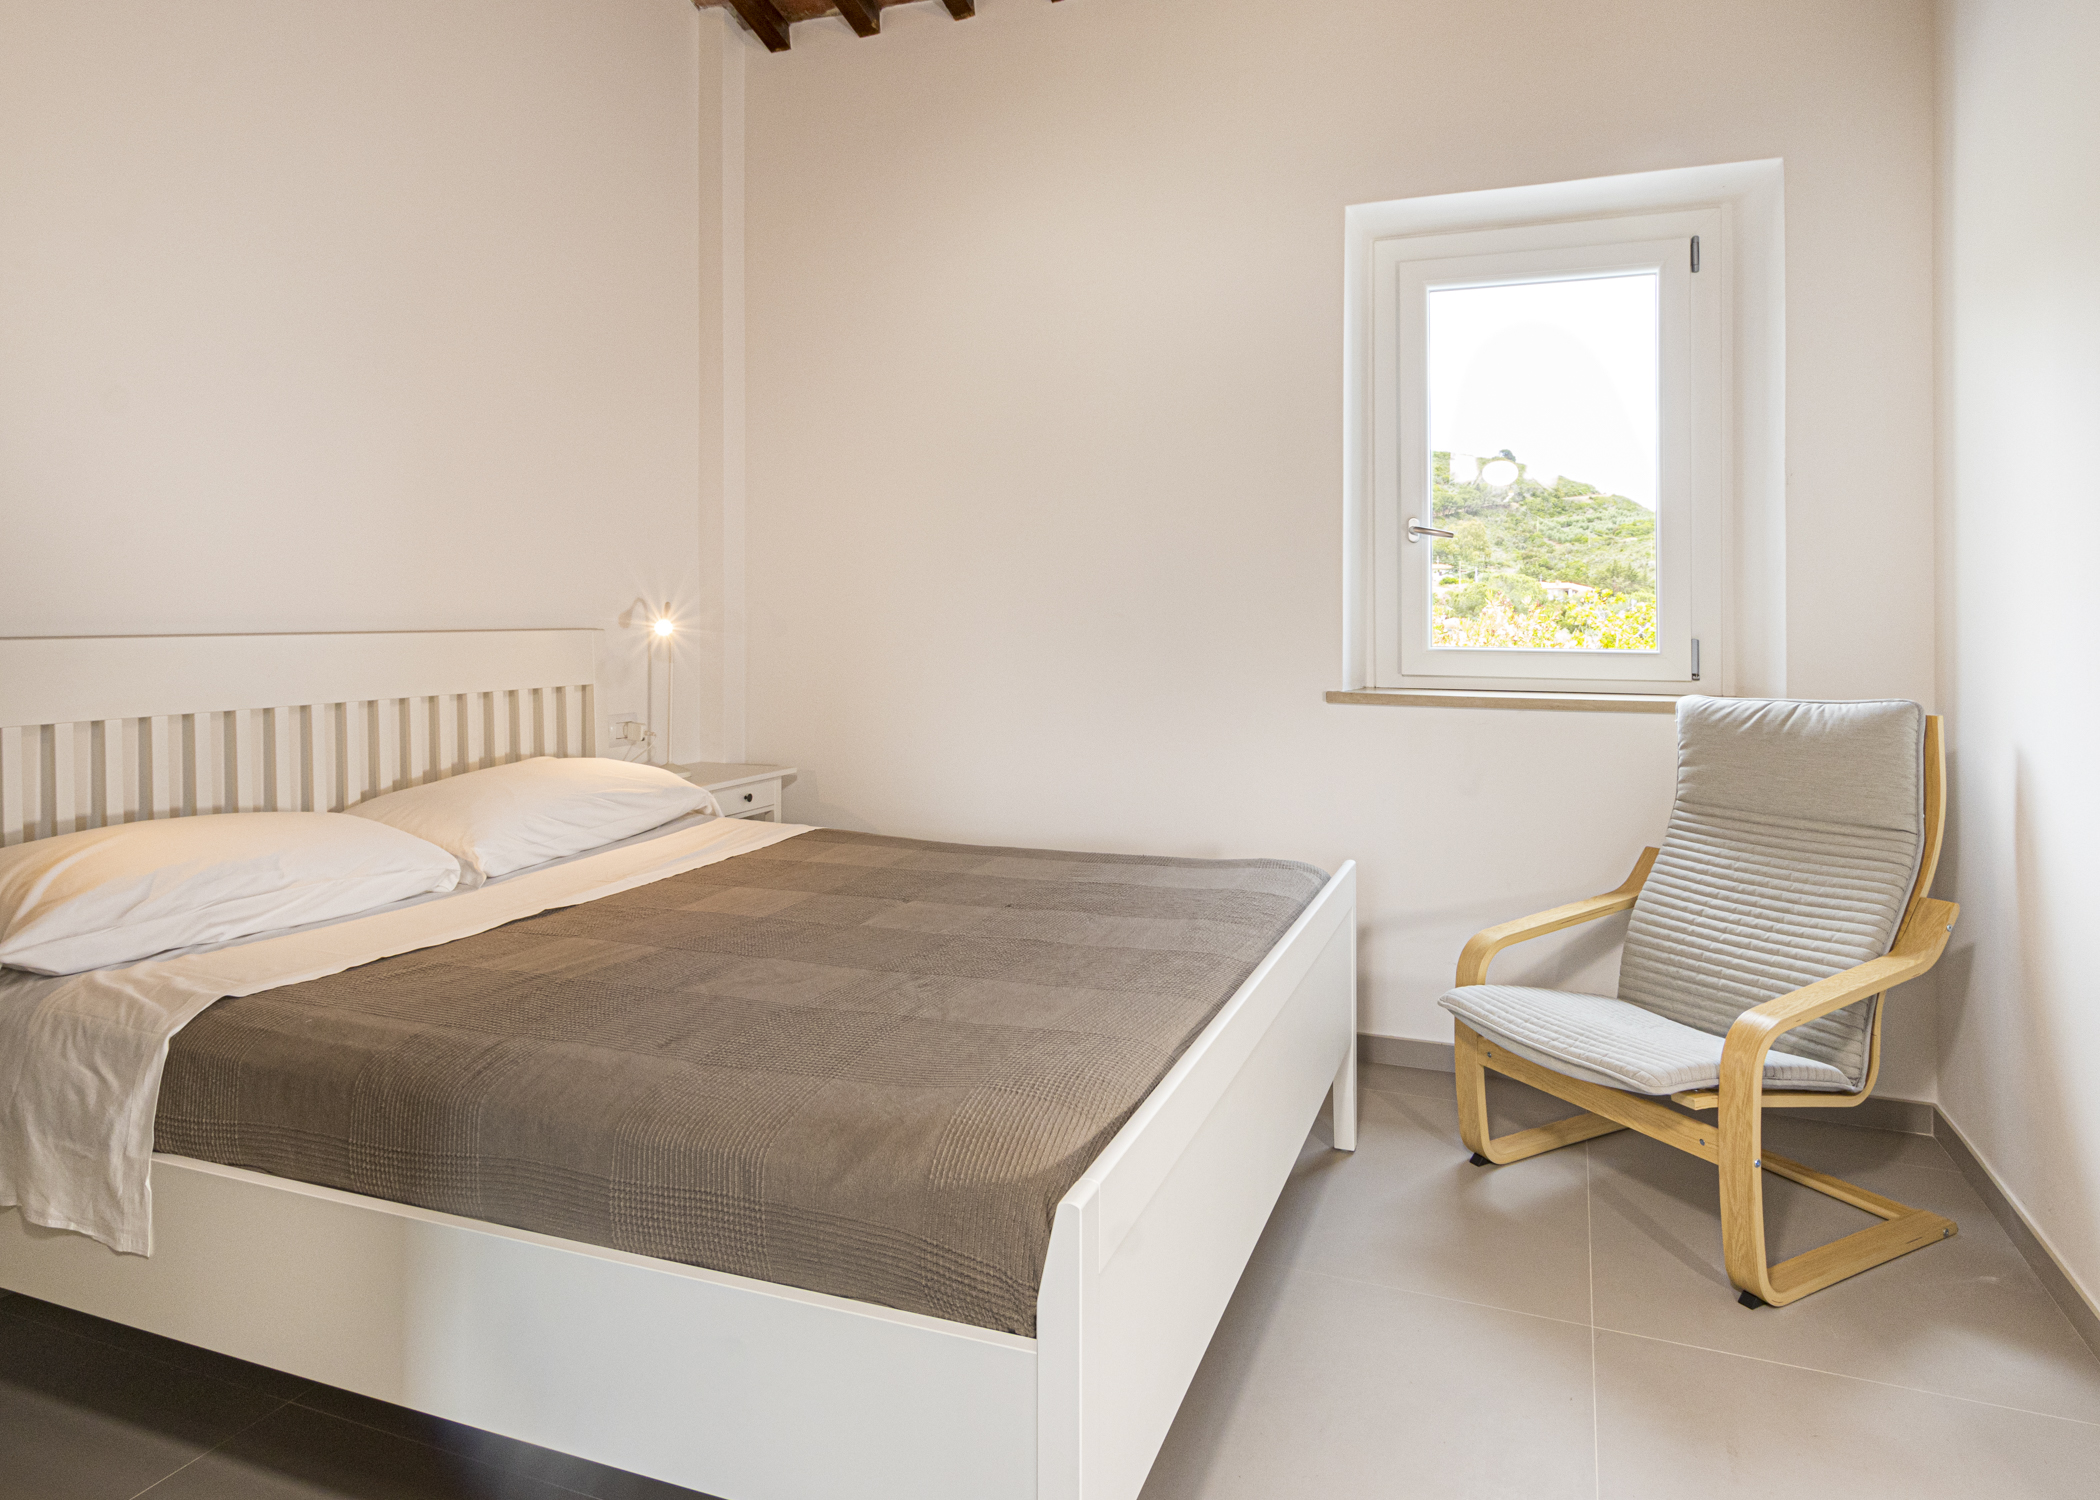 Villa Costanza Room 4 letto matrimoniale_1